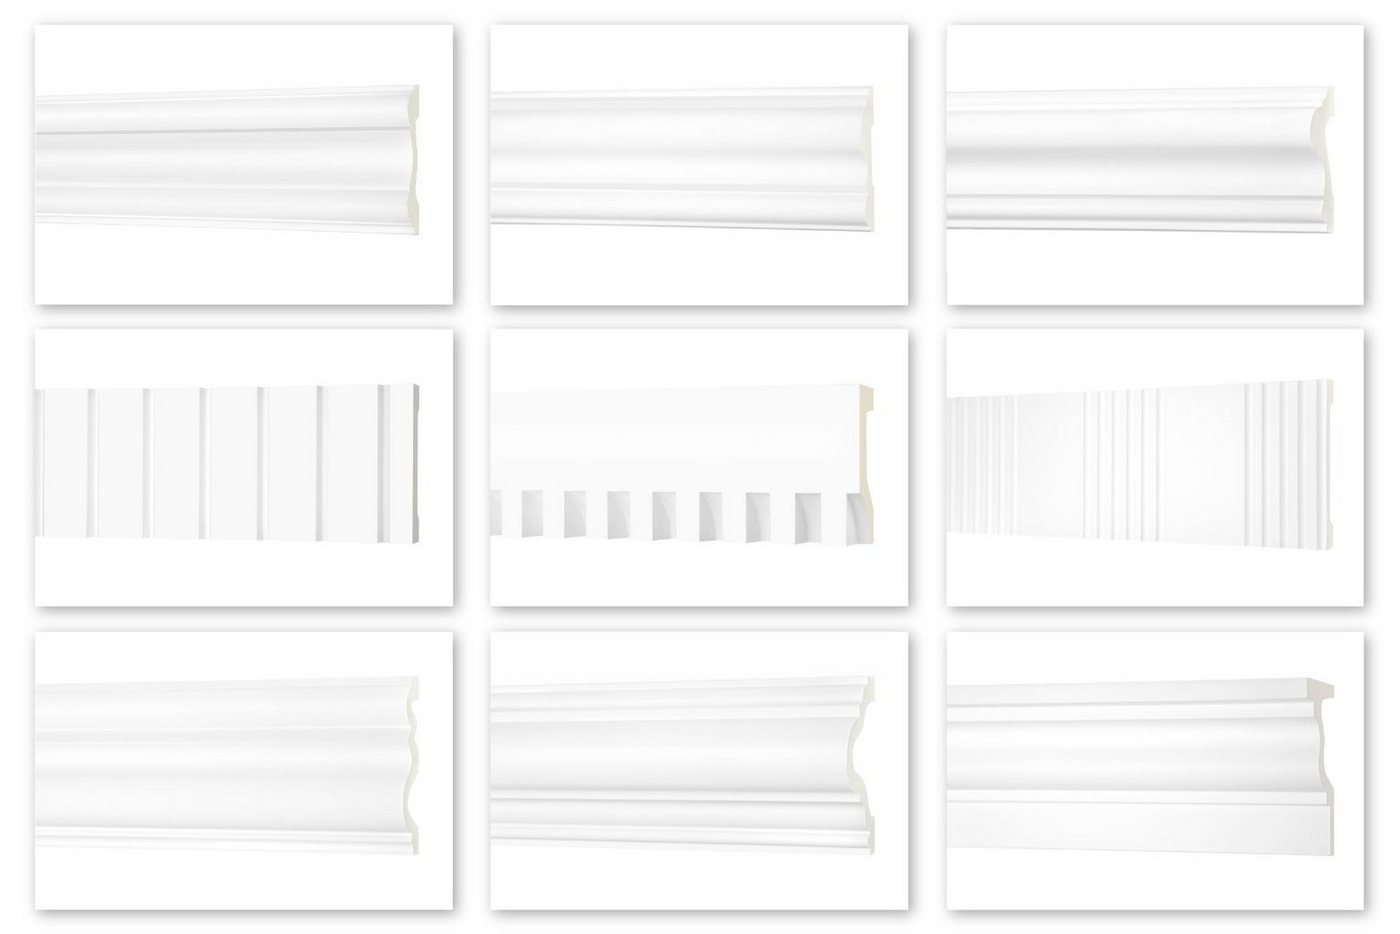 Hexim Perfect Stuckleiste AD 385, Flachleiste aus PU Serie 2 - Stuckleiste glatt, weißes Zierprofil, hart & stoßfest - Wandleiste vorgrundiert von Hexim Perfect